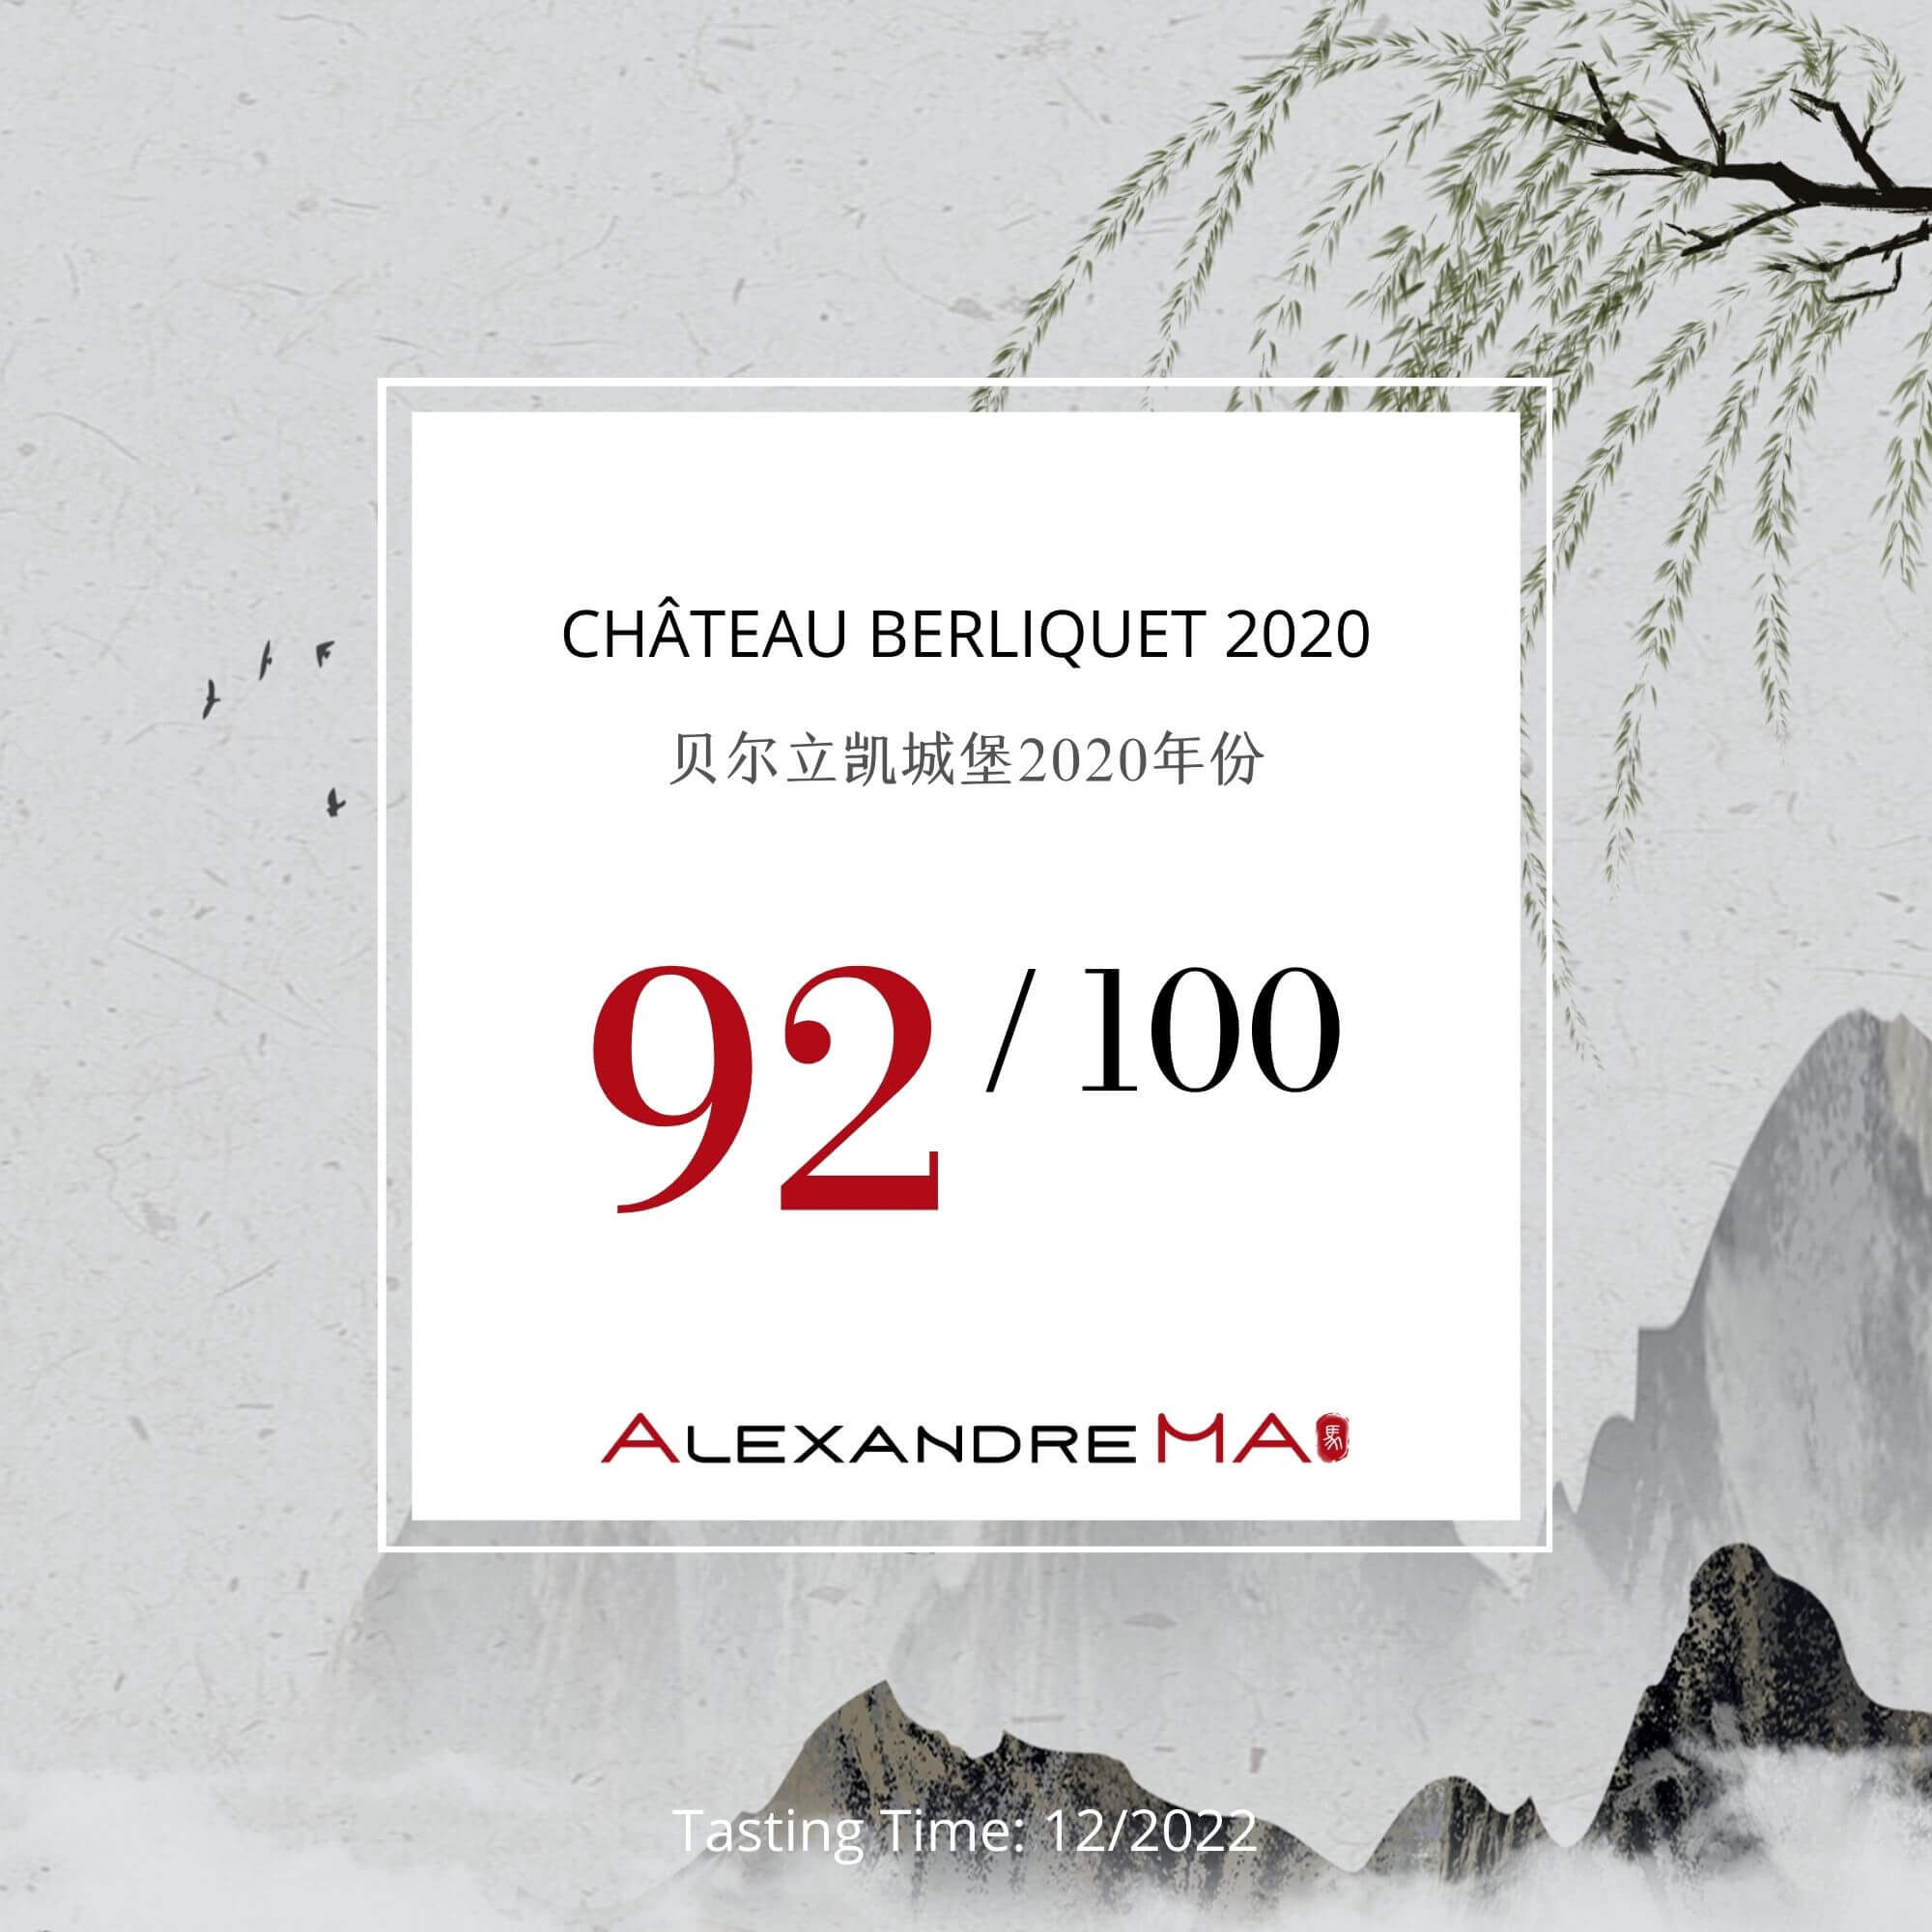 Château Berliquet 2020 - Alexandre MA